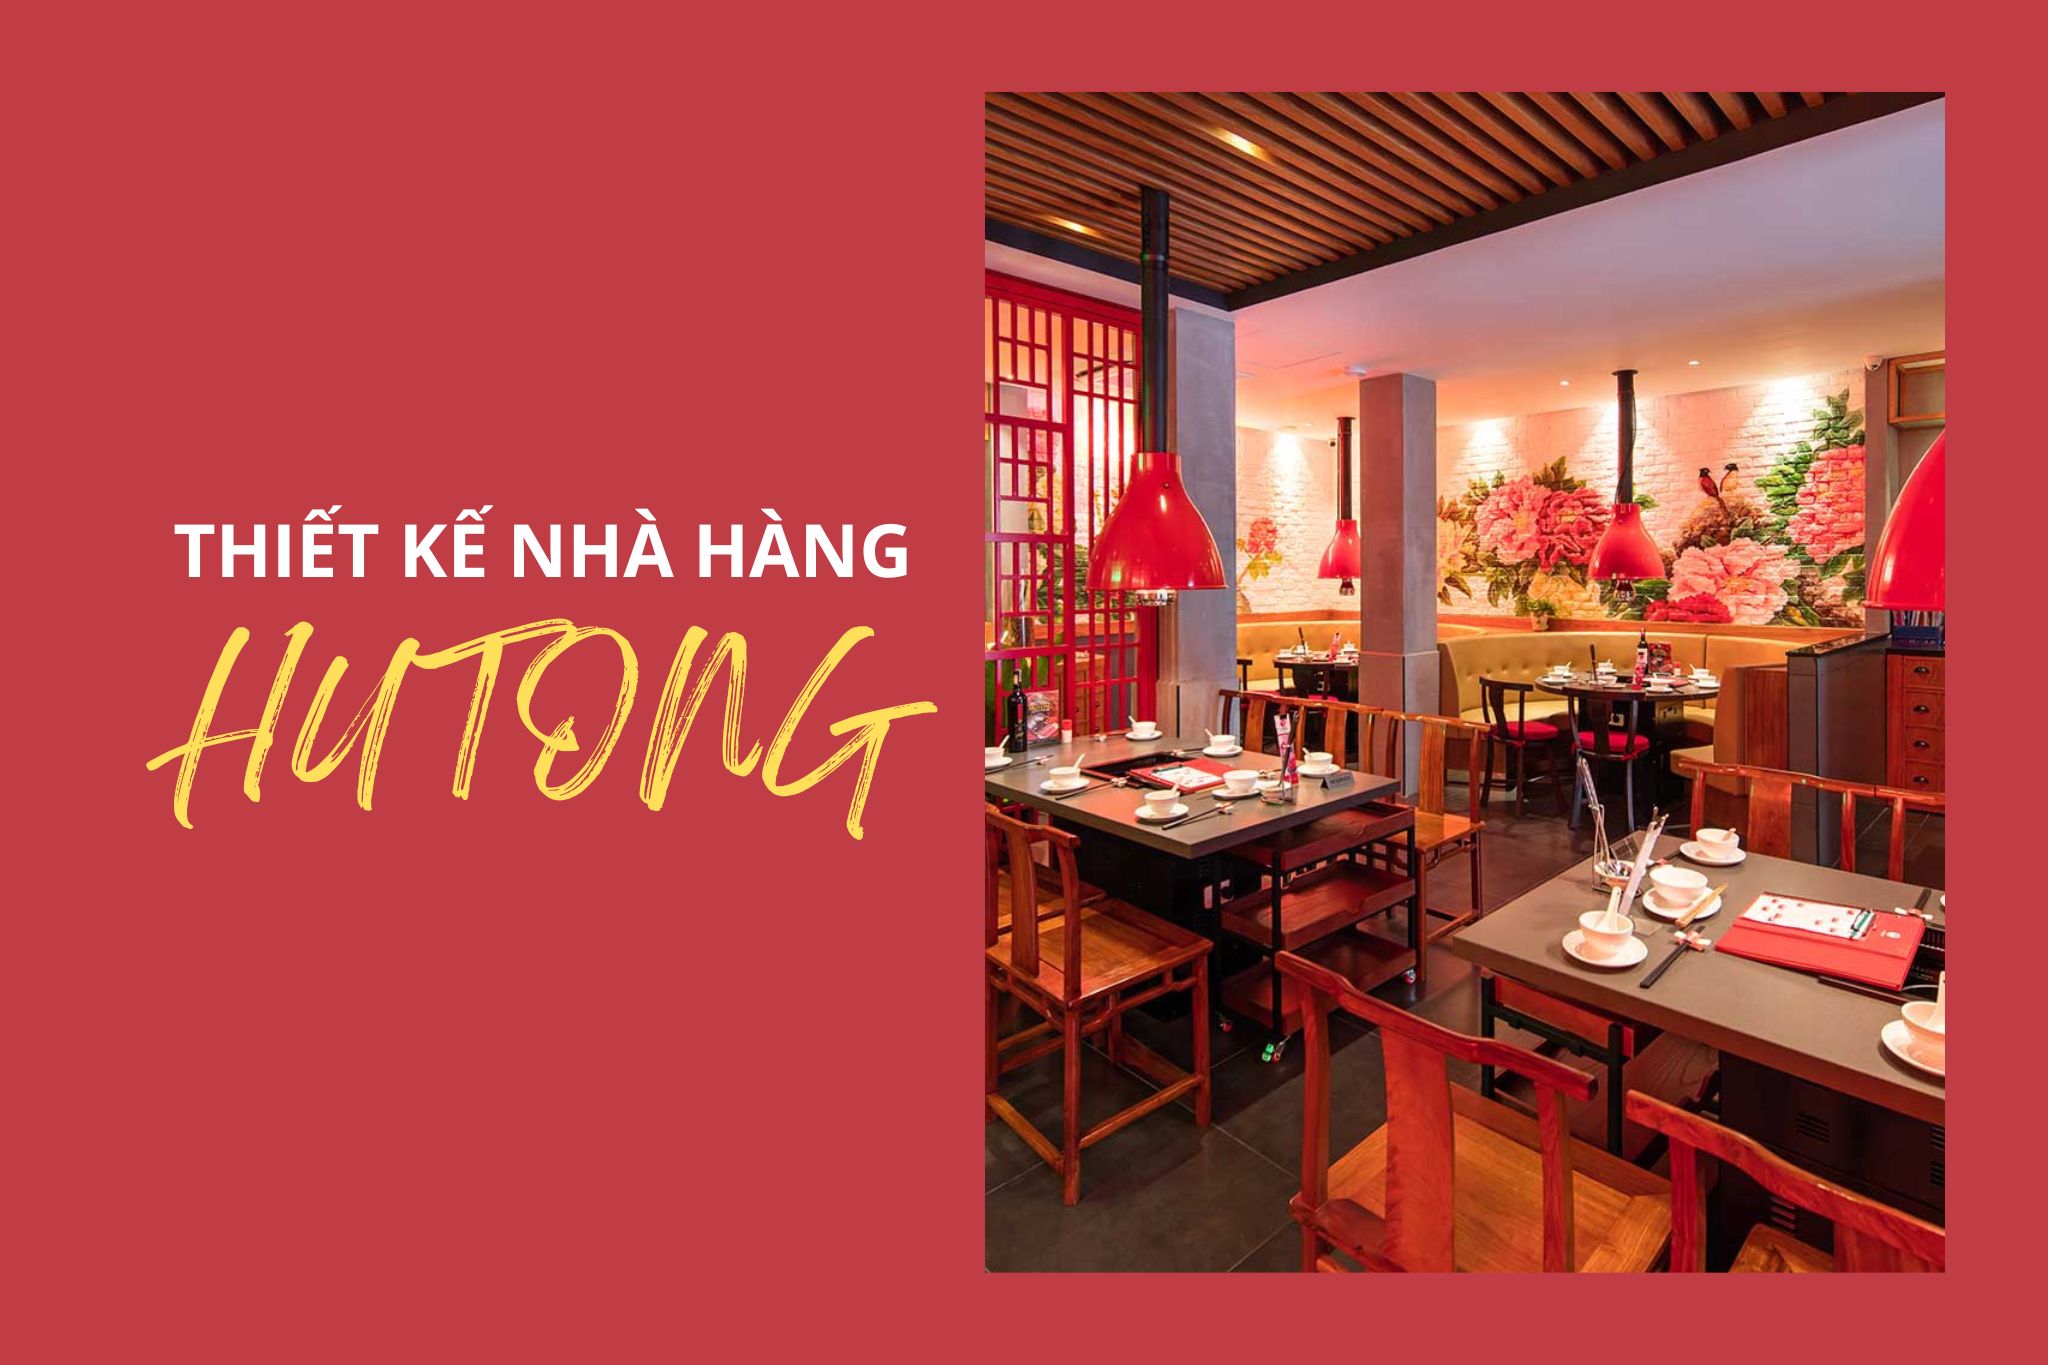 Thiết kế nhà hàng Hutong - Thiên đường lẩu xứ Cảng Thơm